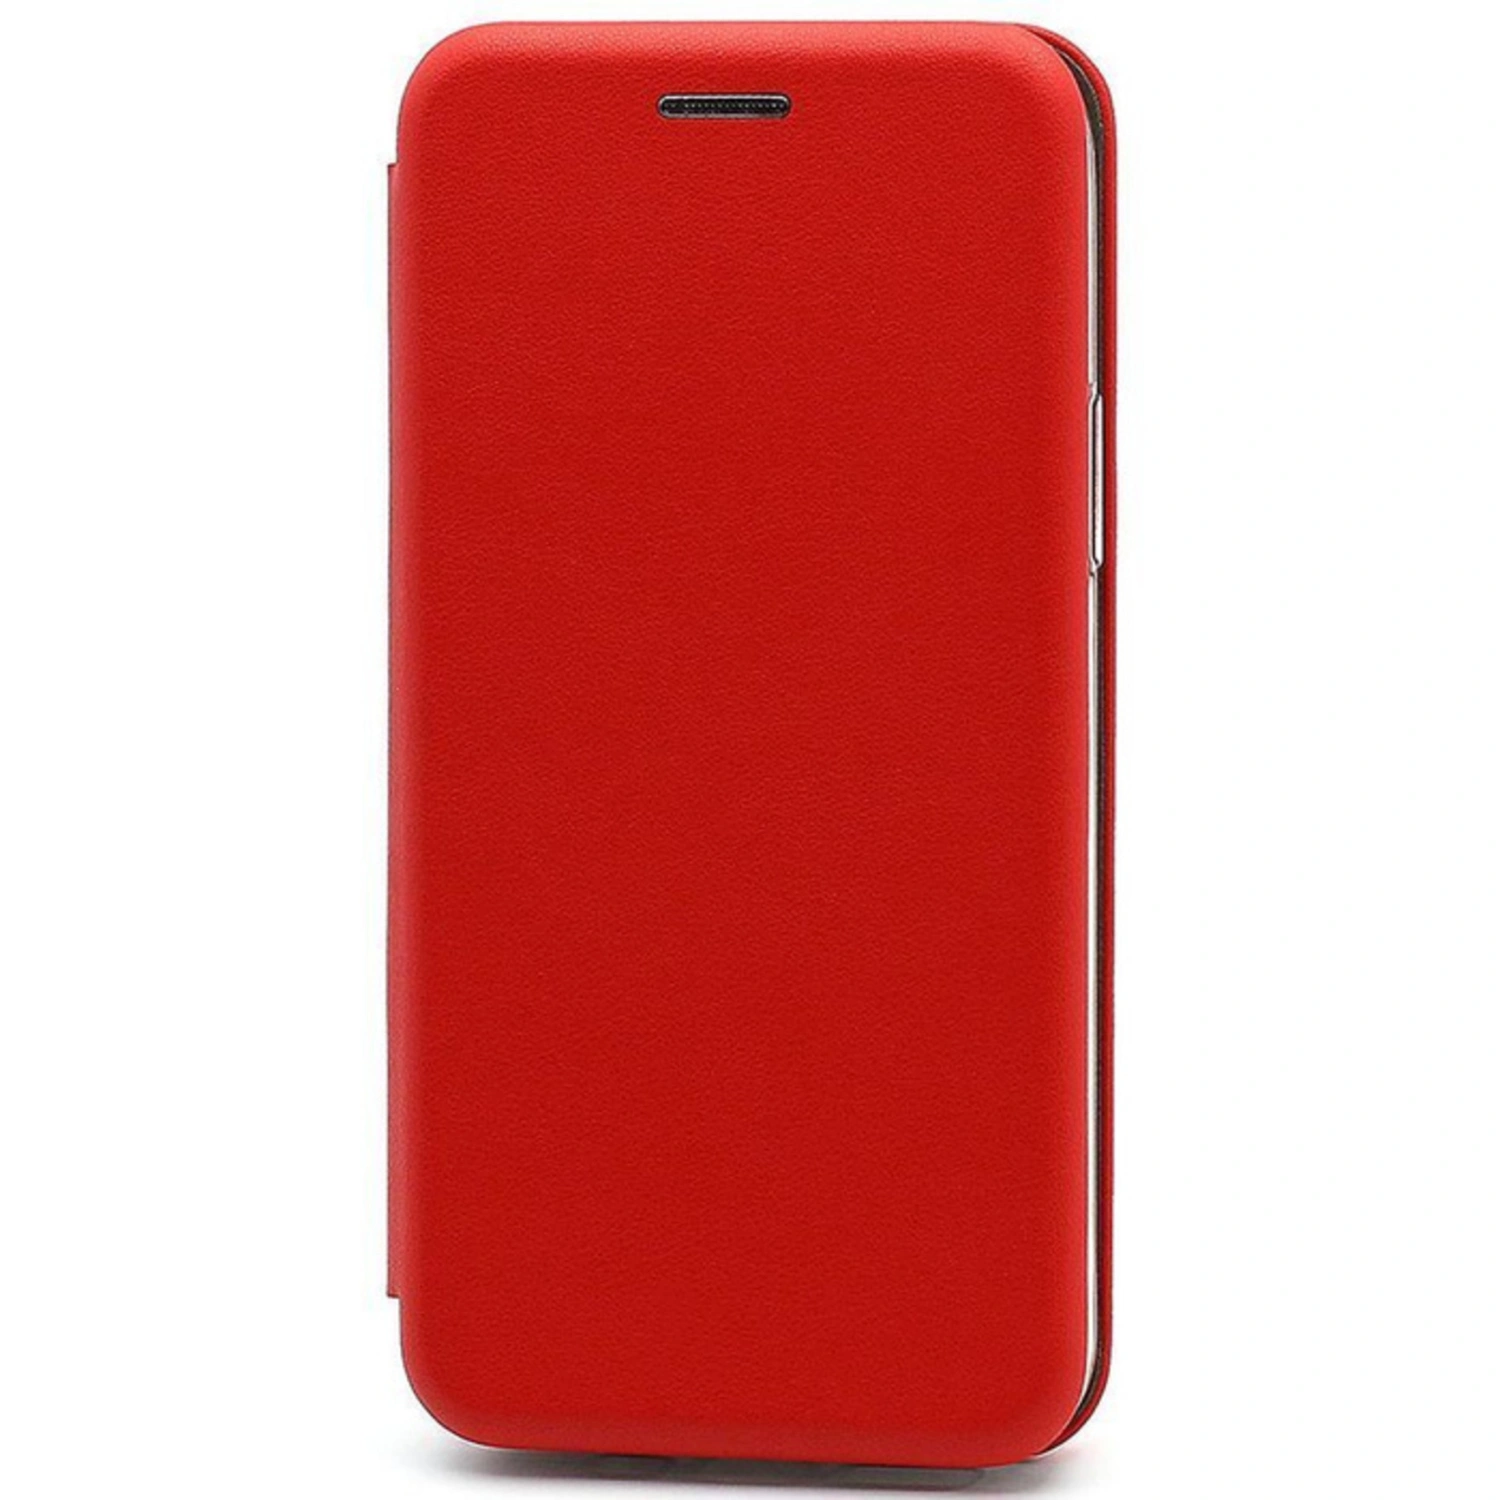 Красный чехол для телефона. Tecno Spark 10 чехол красный. Чехол книжка на редми 12. Чехол для Xiaomi Redmi 9c. Редми 10 красный чехол.